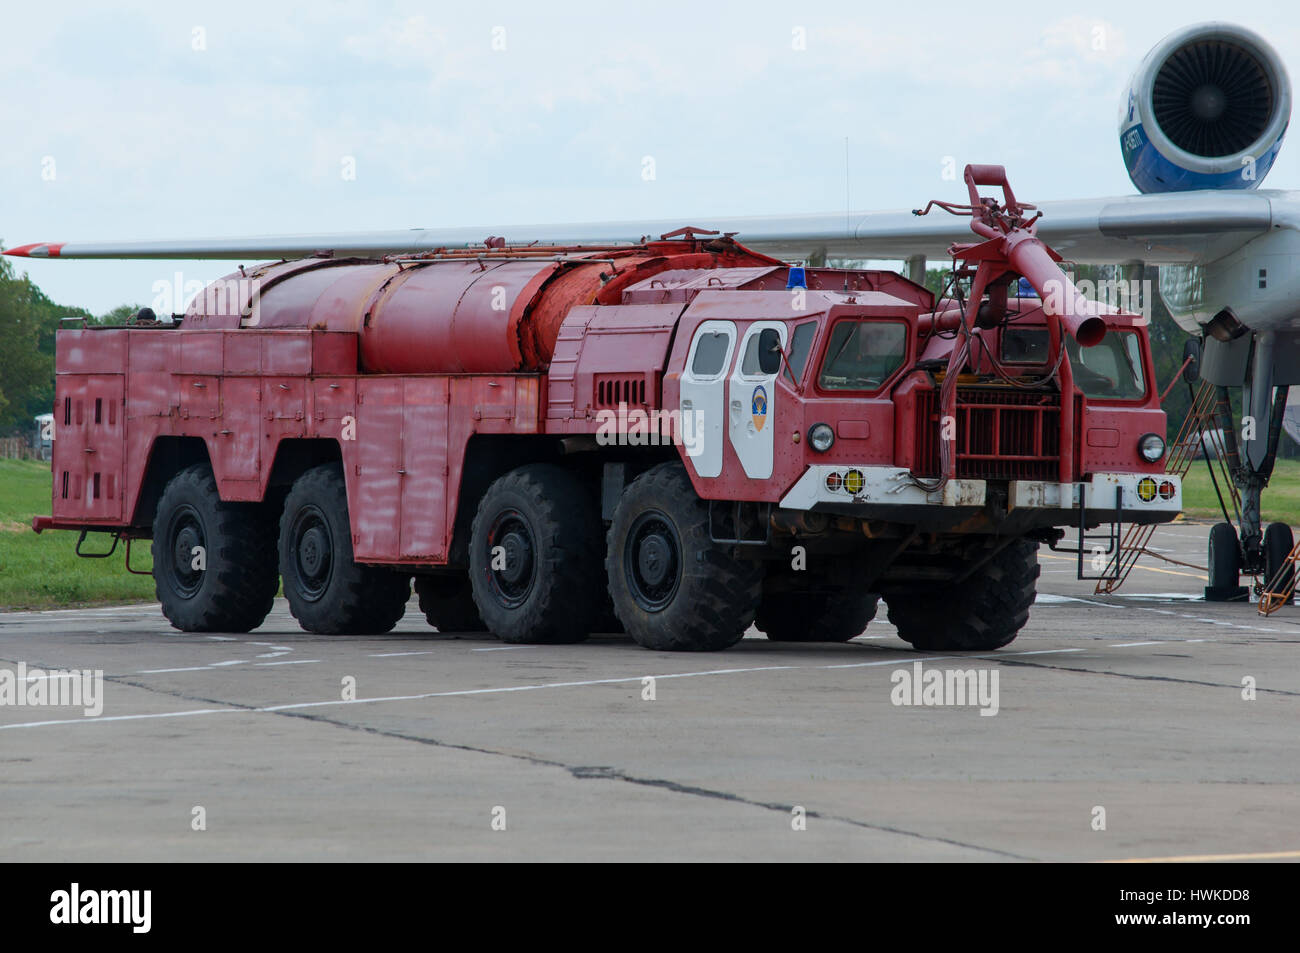 Flugplatz Löschfahrzeug, Taganrog, Russland, 16. Mai 2015. Flugzeugwerk, läuft diese Maschine auf dem Boden mit Wasser Wasserflugzeuge Stockfoto